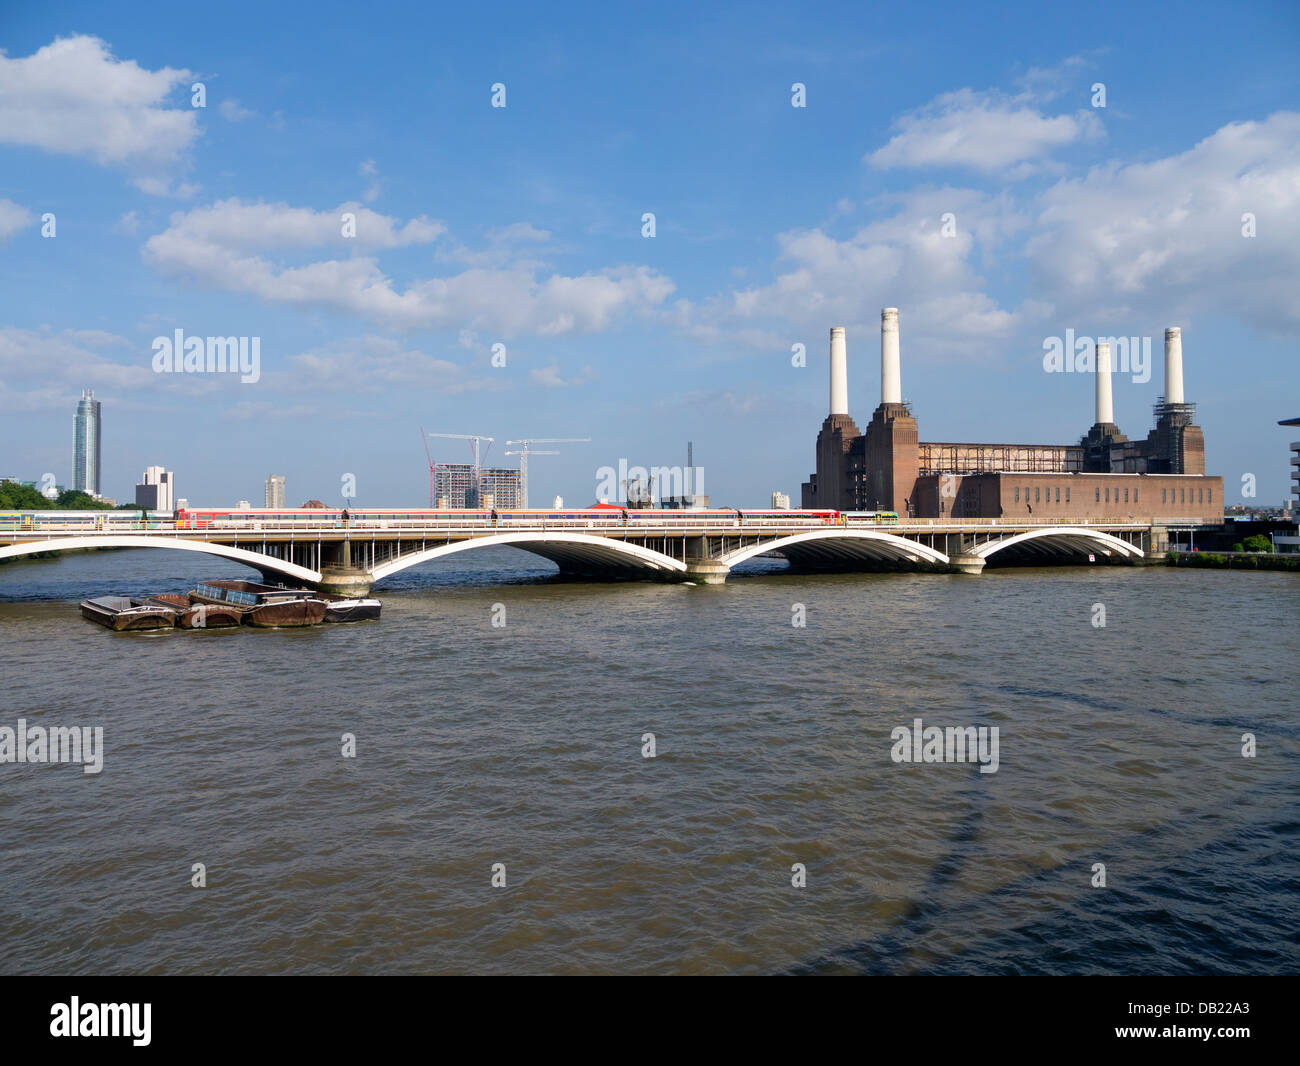 Puente de ferrocarril, Battersea Power Station y el río Támesis. Londres, Inglaterra. Foto de stock